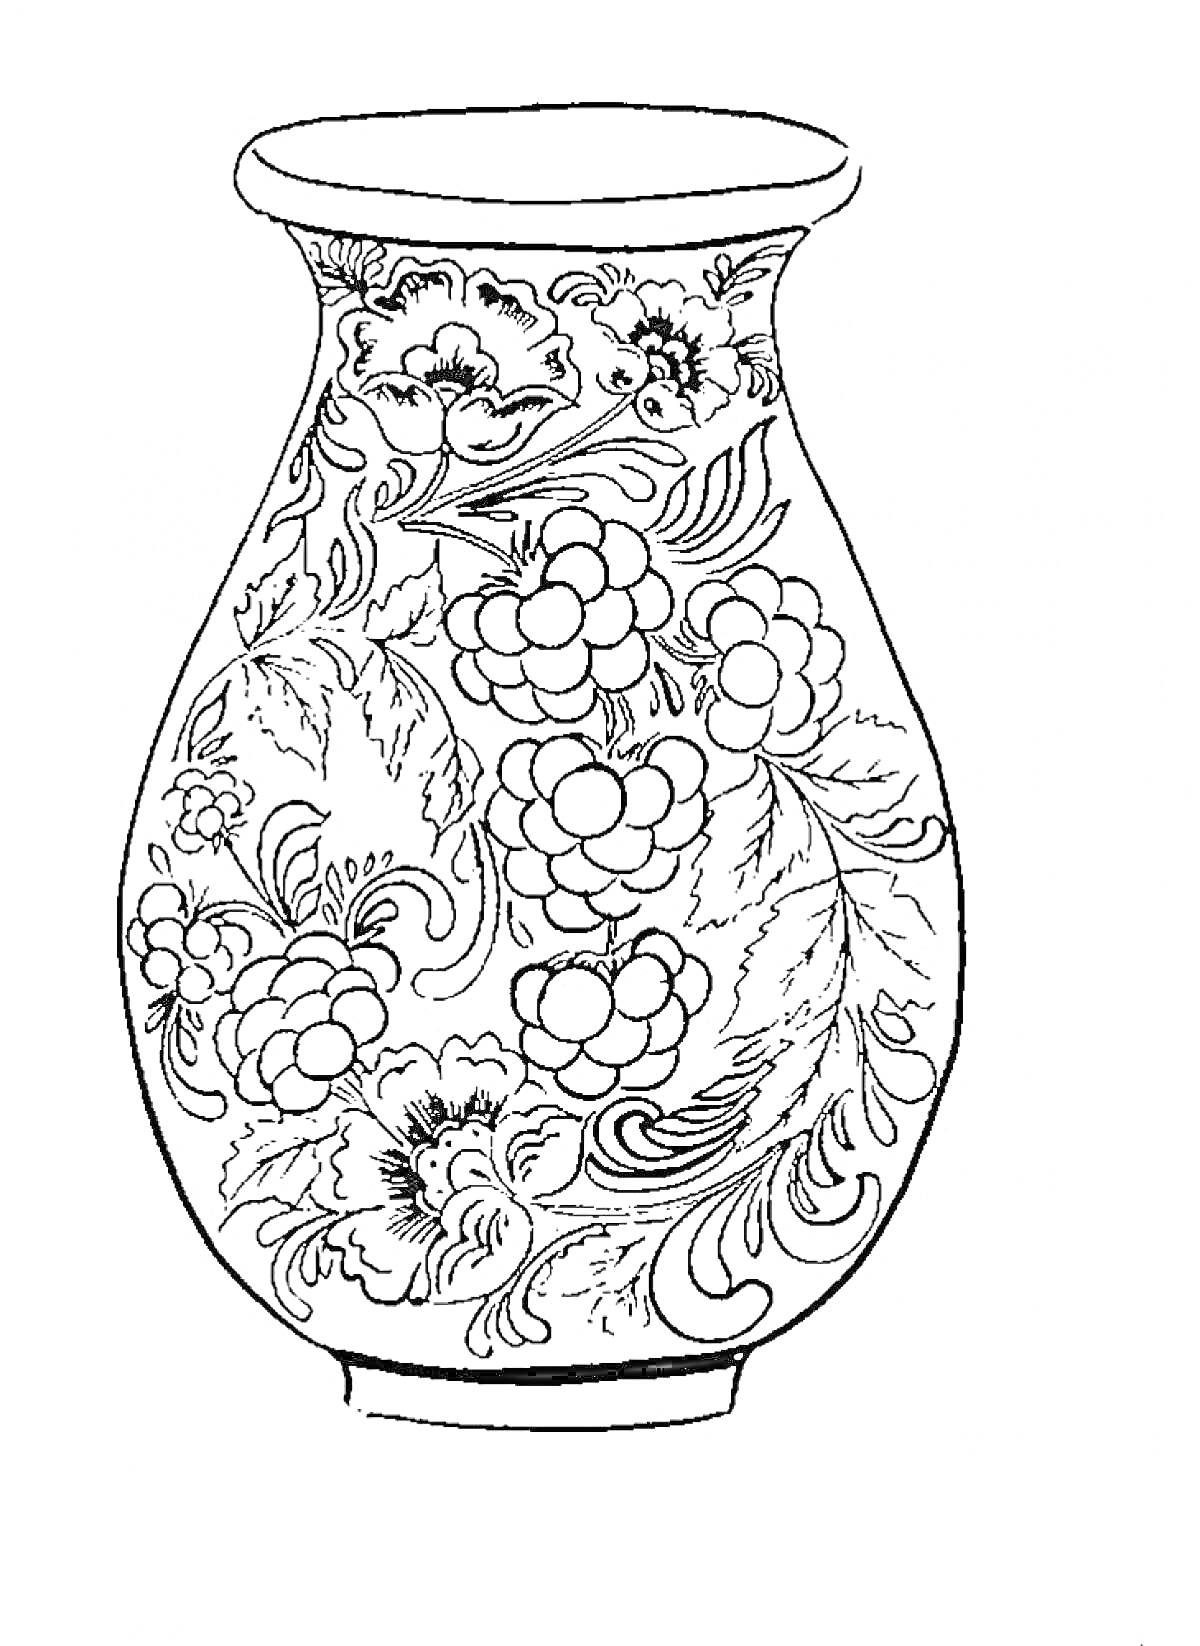 Раскраска Ваза с хохломской росписью: цветы, ягоды, листья и завитки